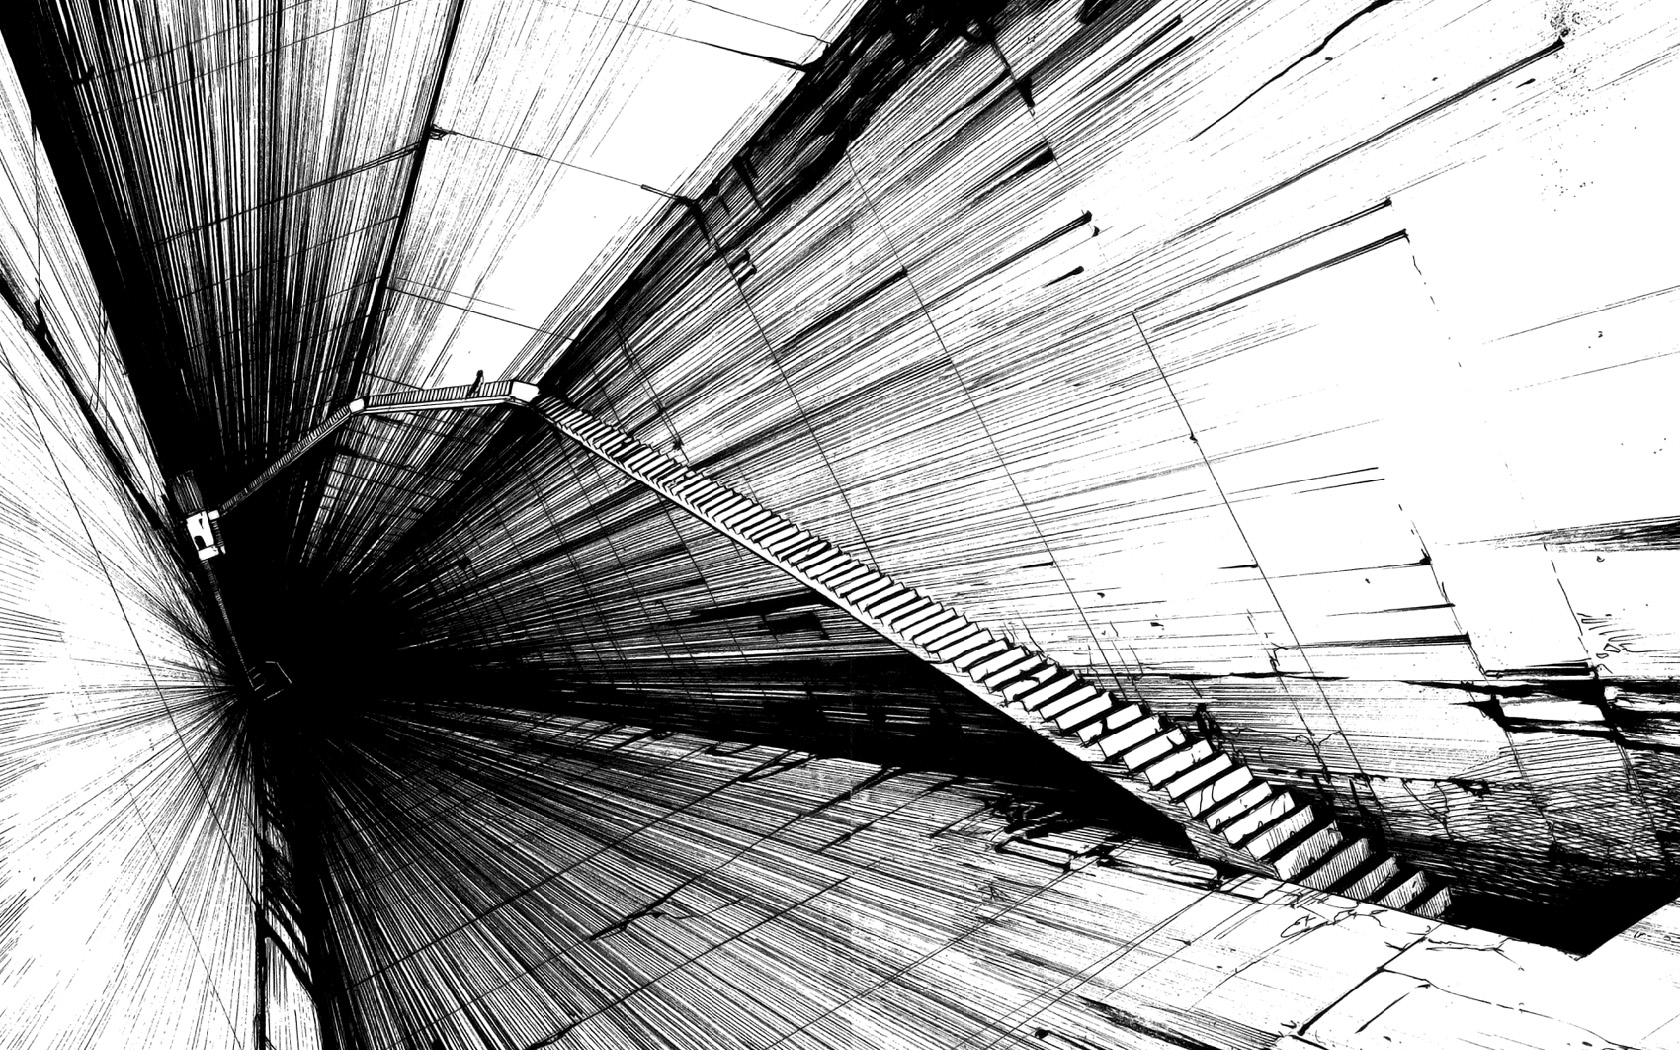 papel pintado abstracto blanco y negro,en blanco y negro,monocromo,arquitectura,línea,fotografía monocroma